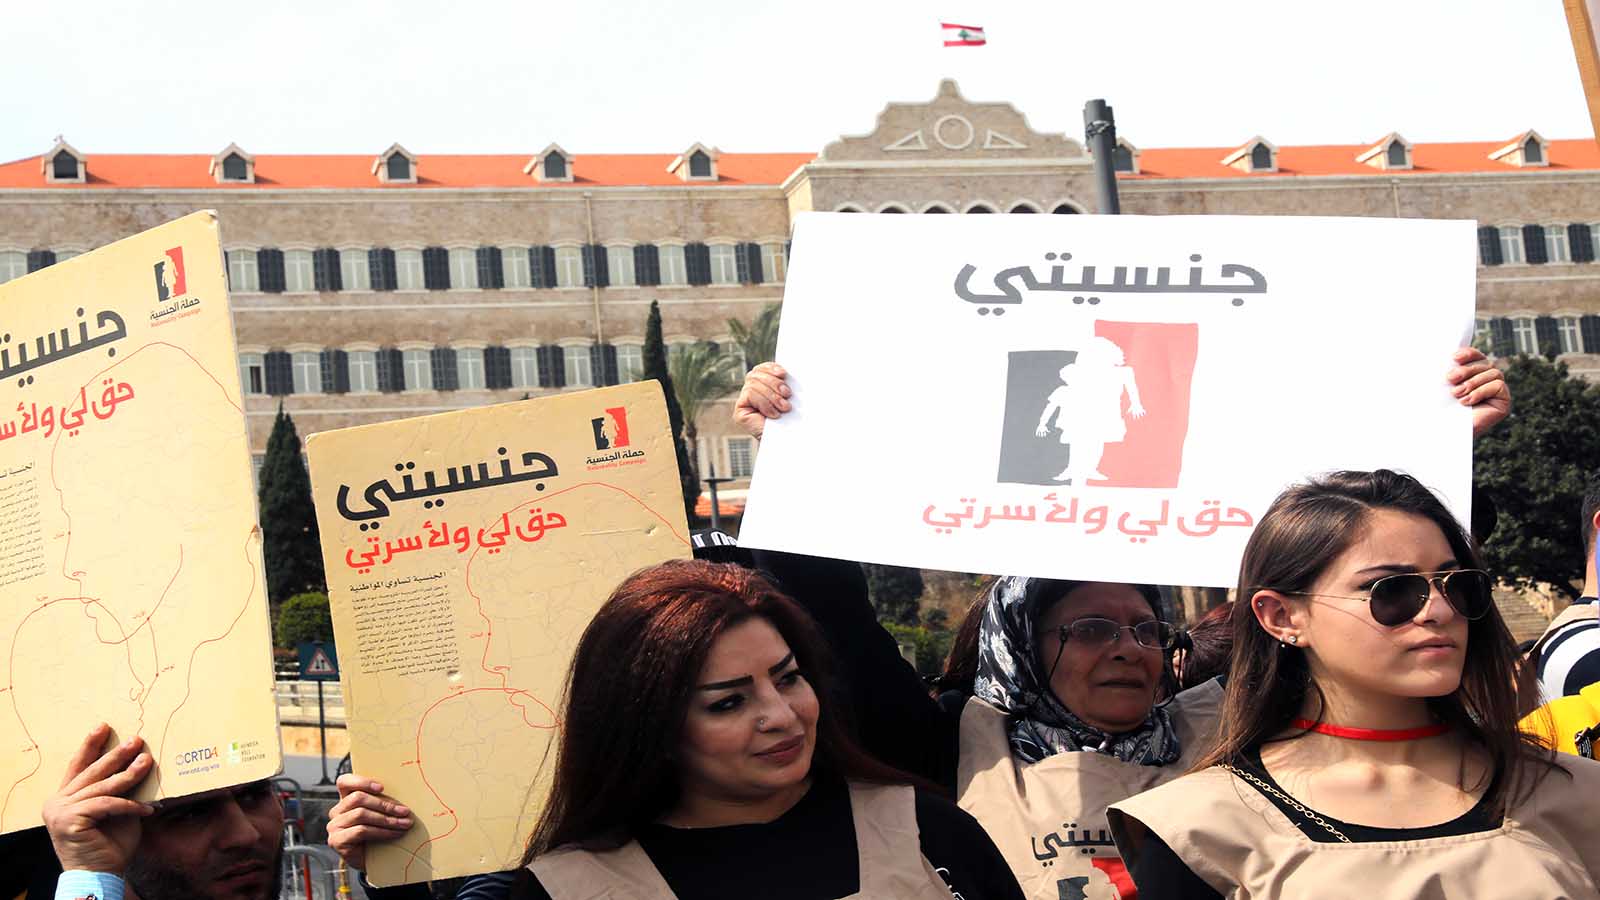 الجنسية اللبنانية لمن يستحقها وليست هدية يوزعها طائفيون